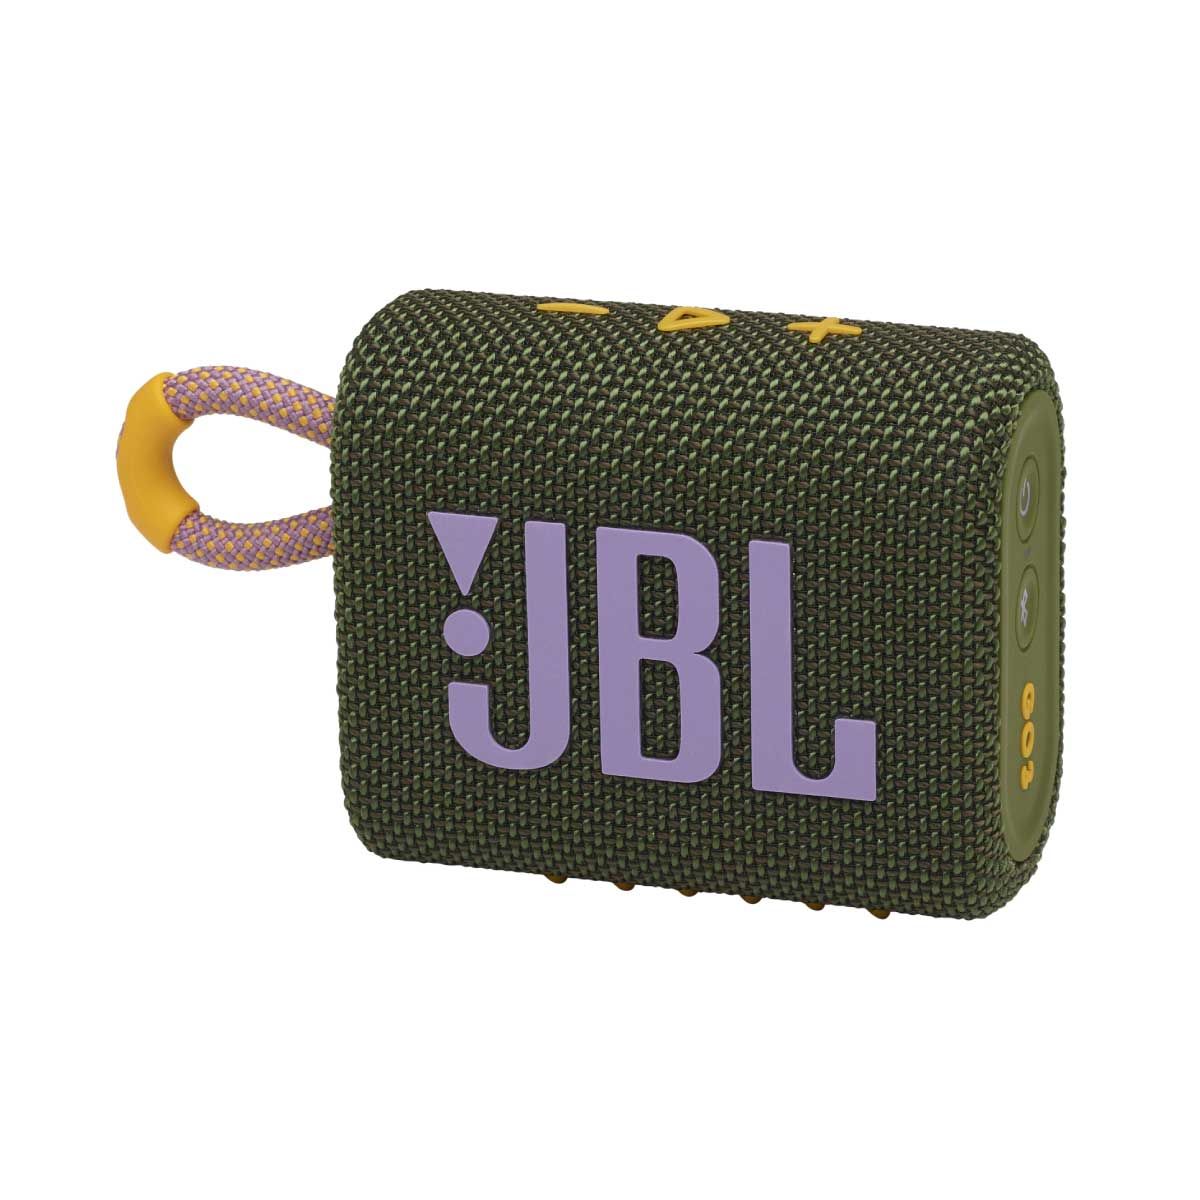 JBL ลำโพงพกพาบลูทูธ รุ่น GO3/GY สีเทา กันน้ำ/กันฝุ่น